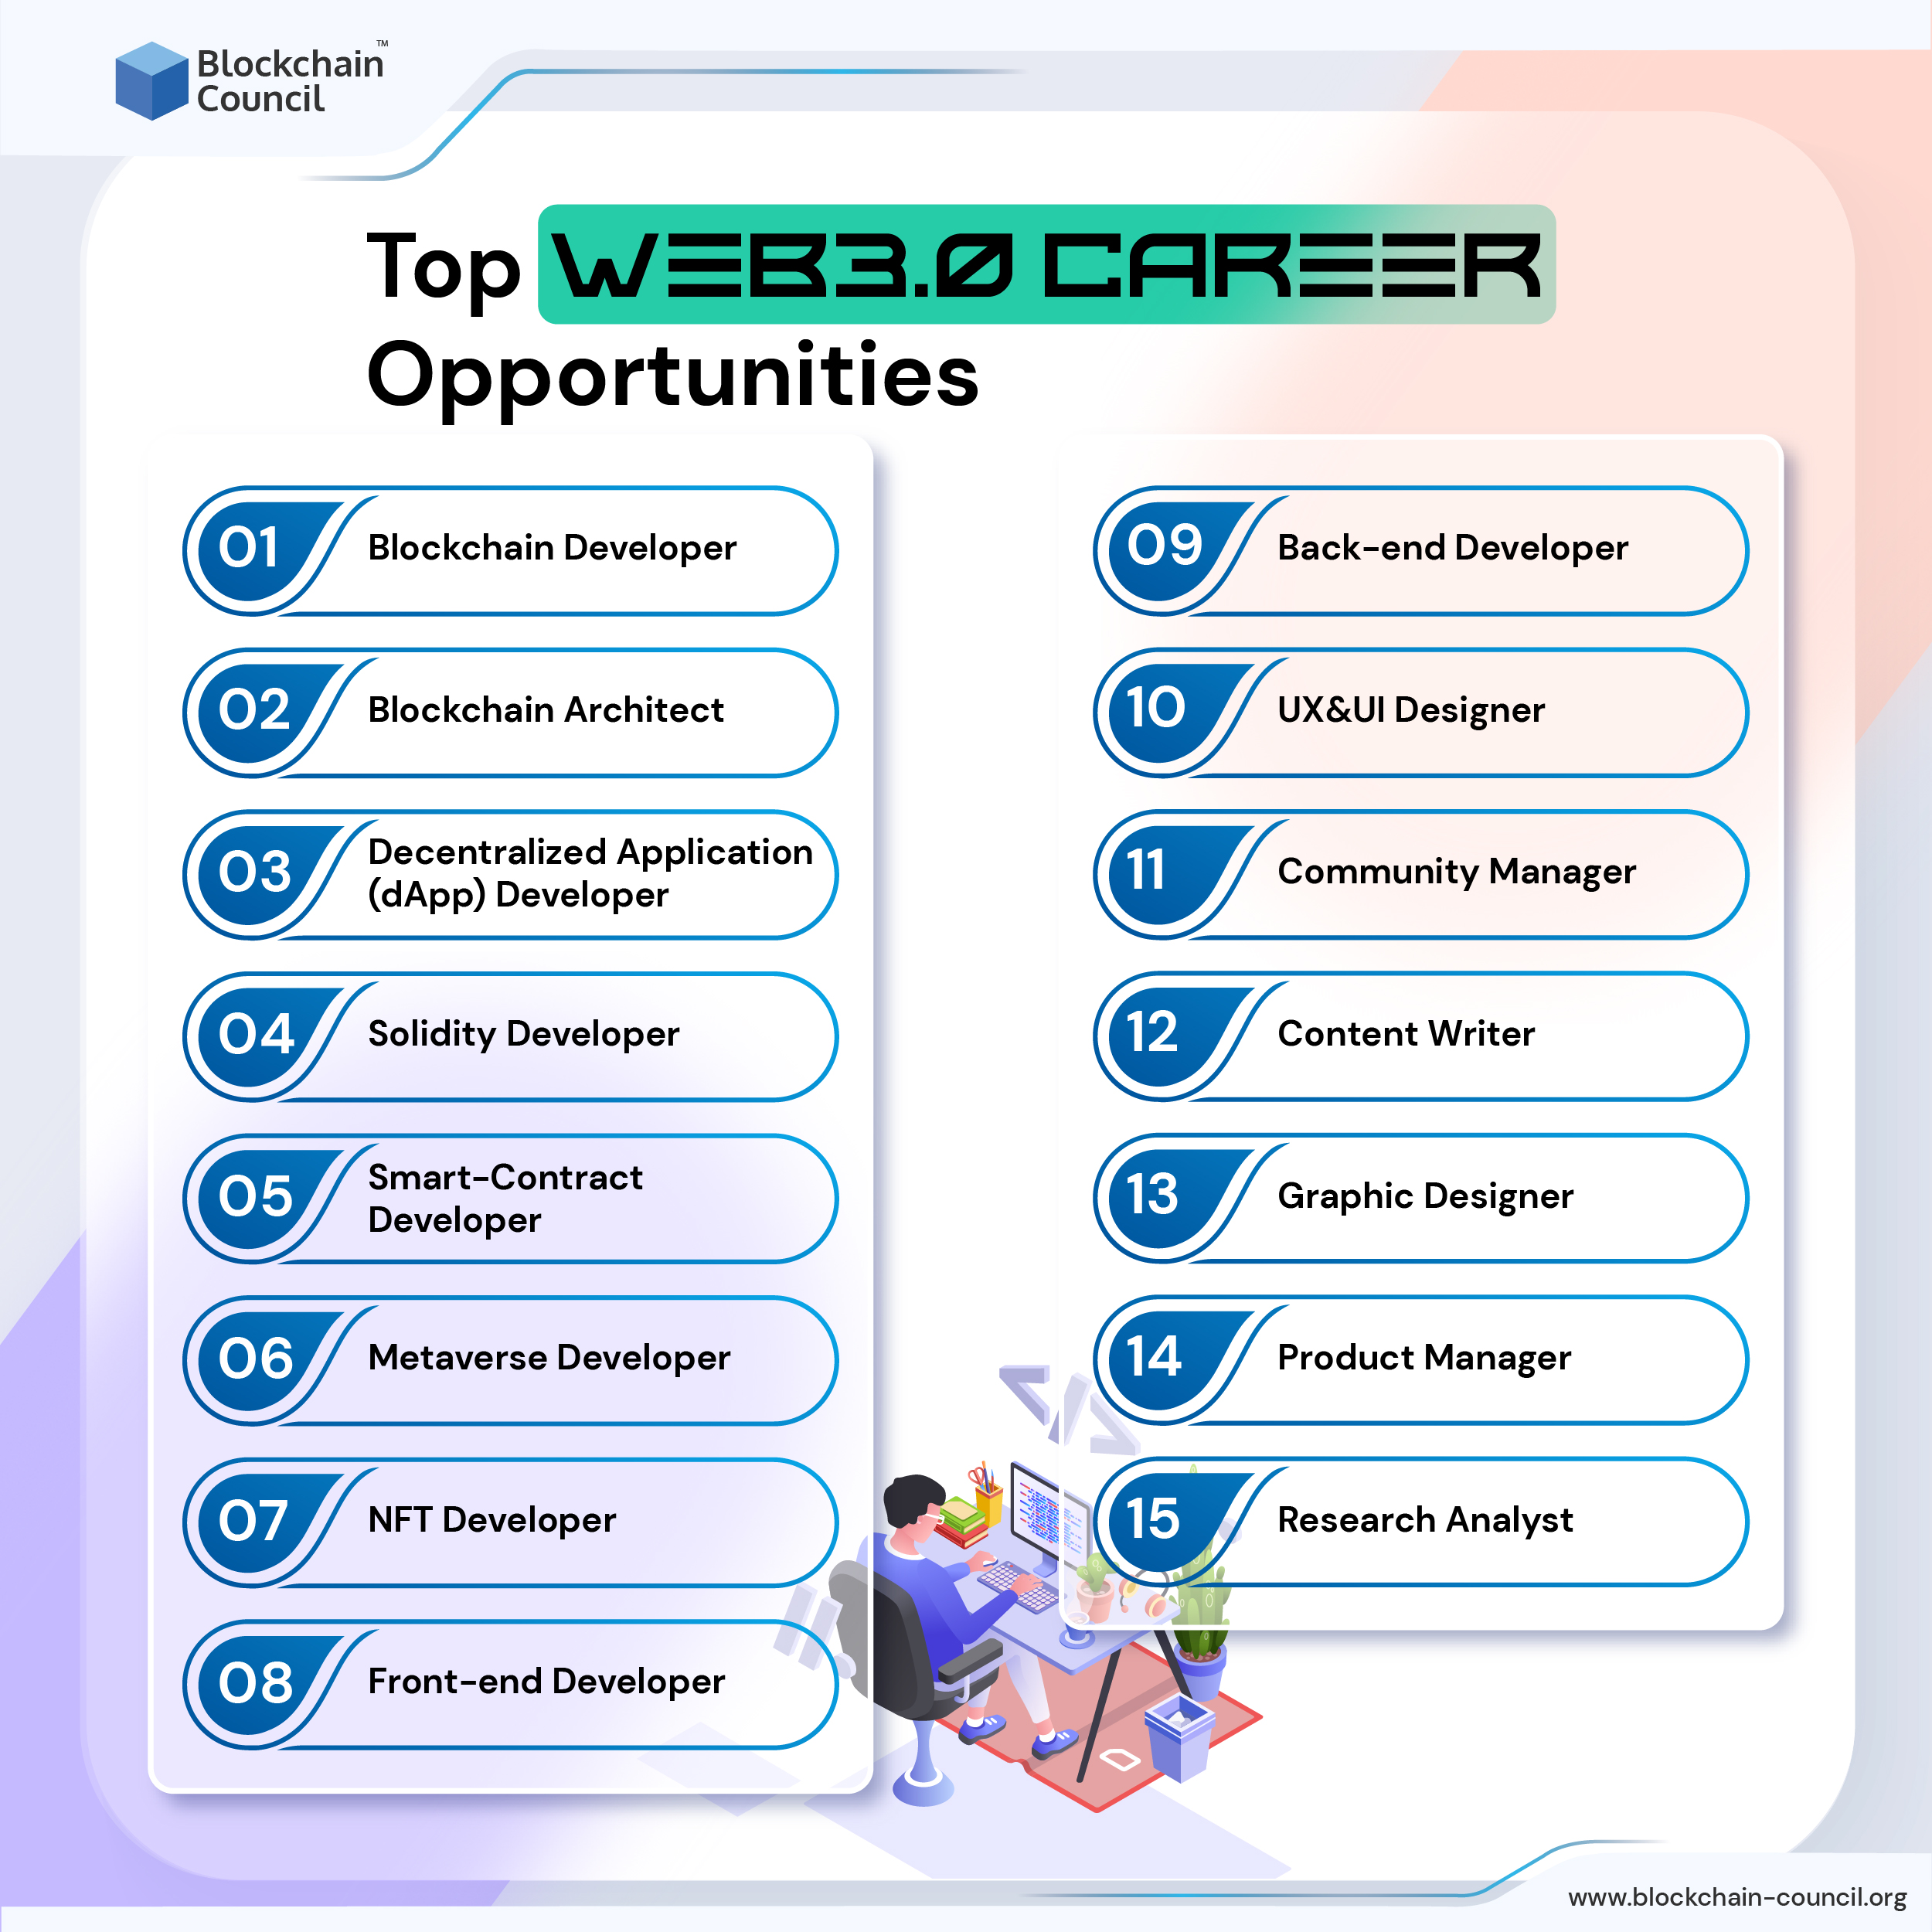 Top Web 3.0 Career Opportunities